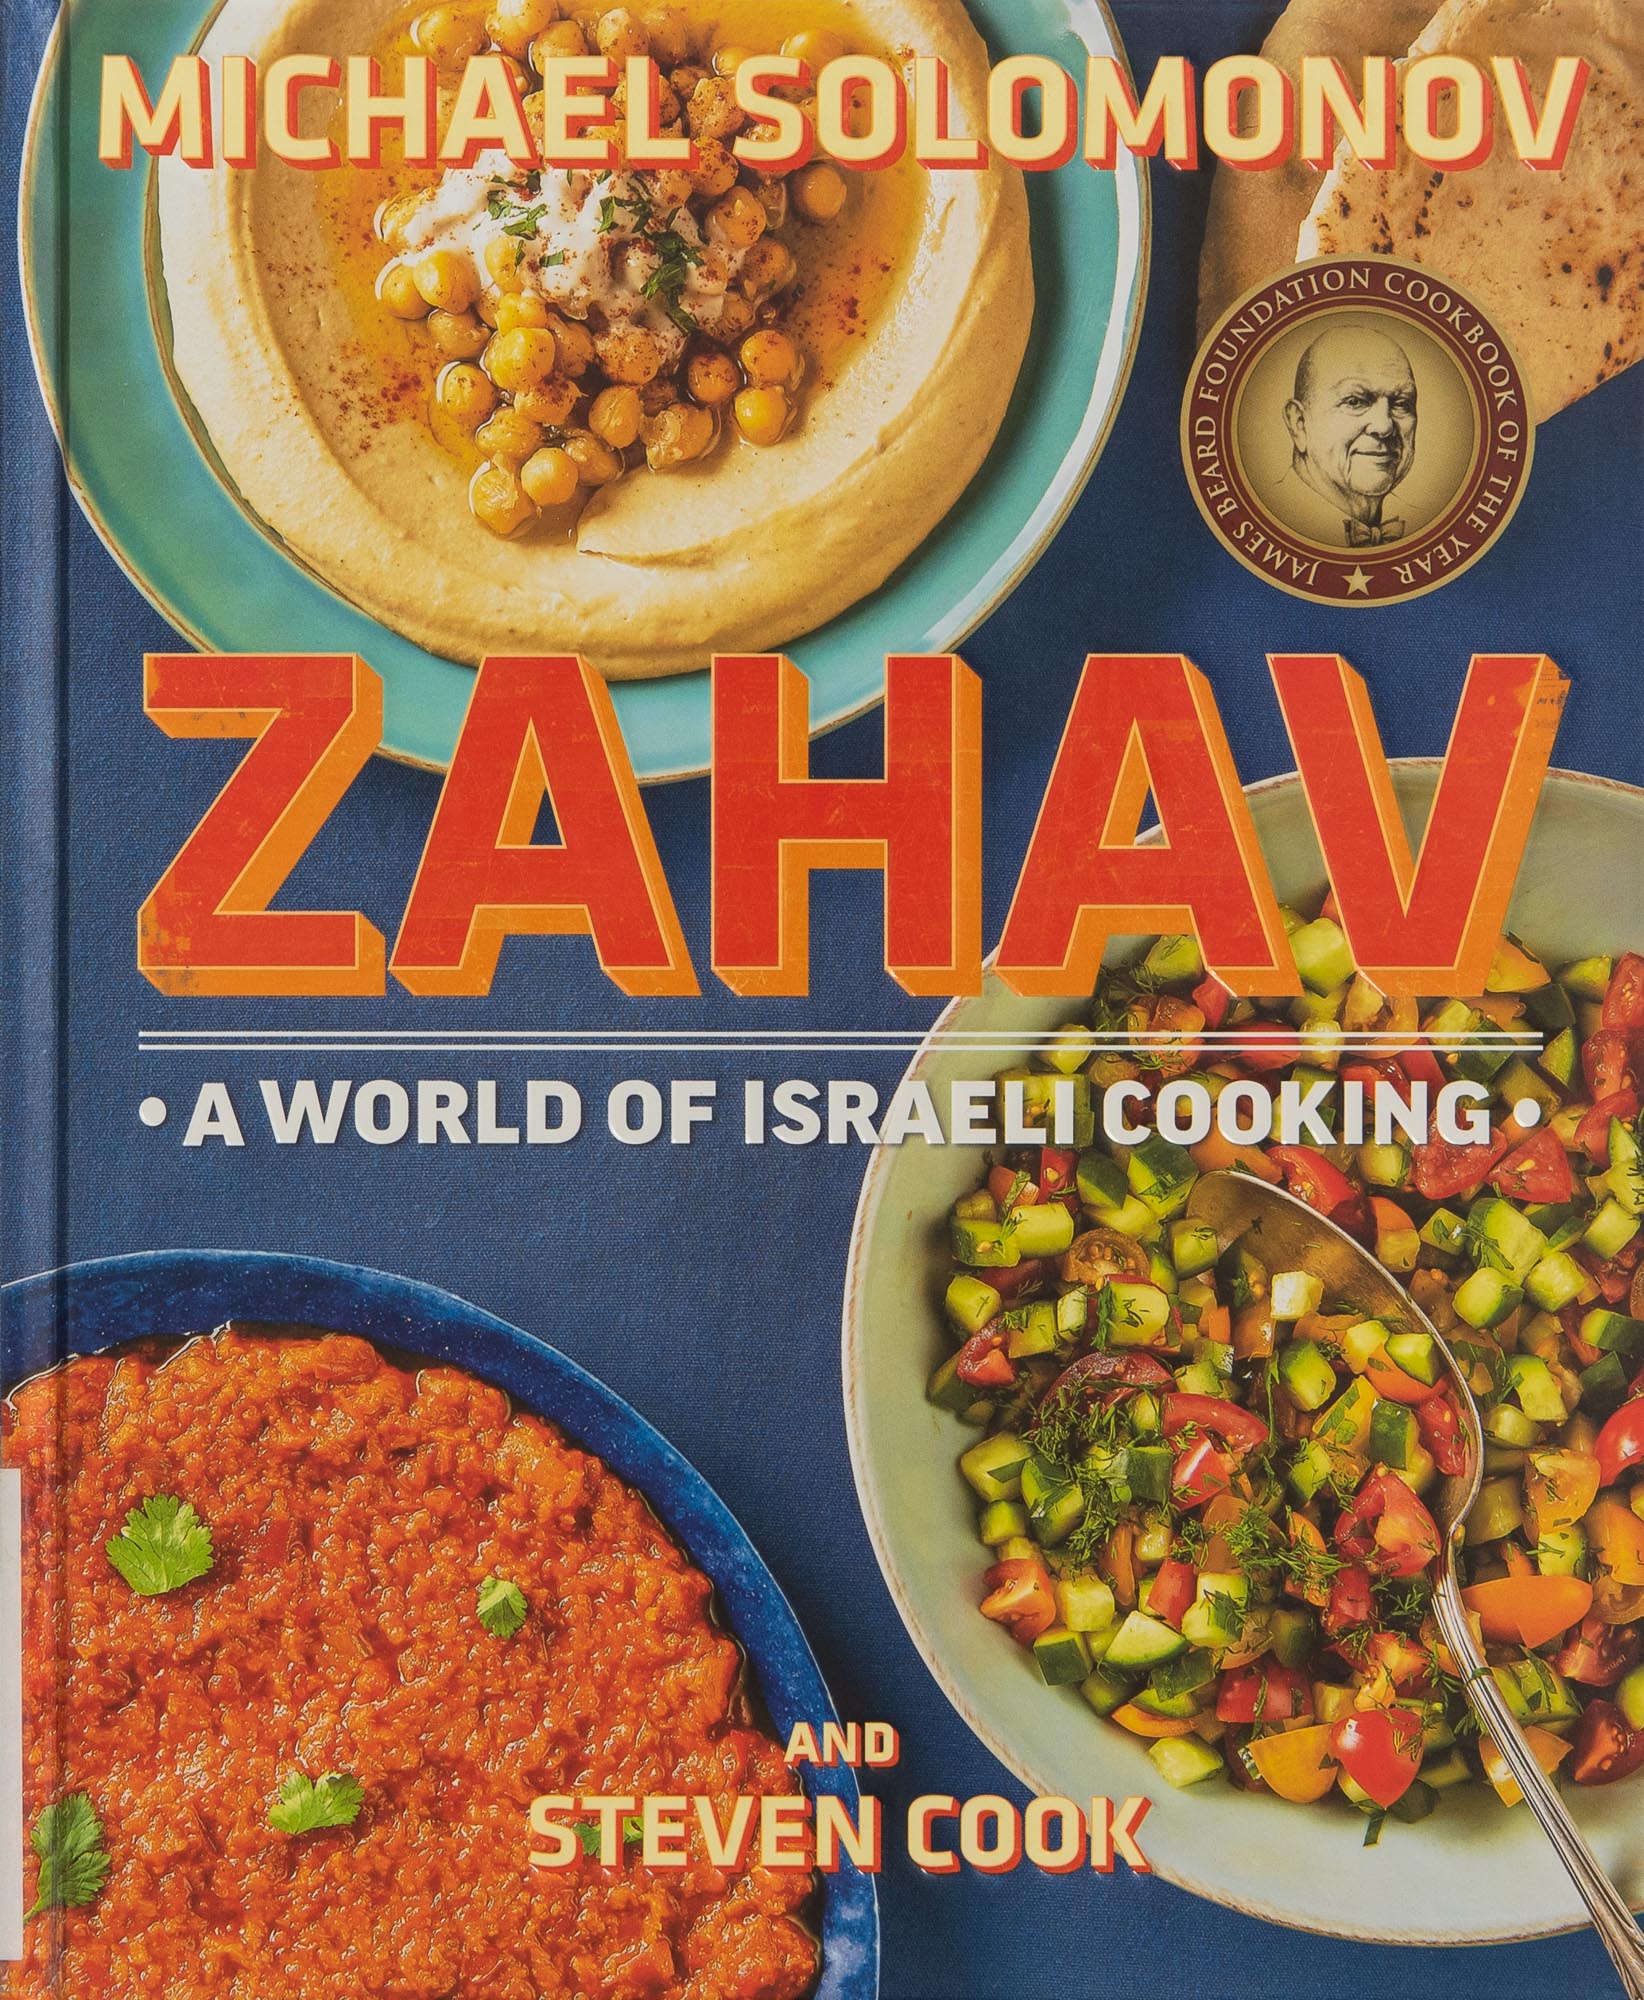 The cover of Michael Solomonov's cookbook Zahav